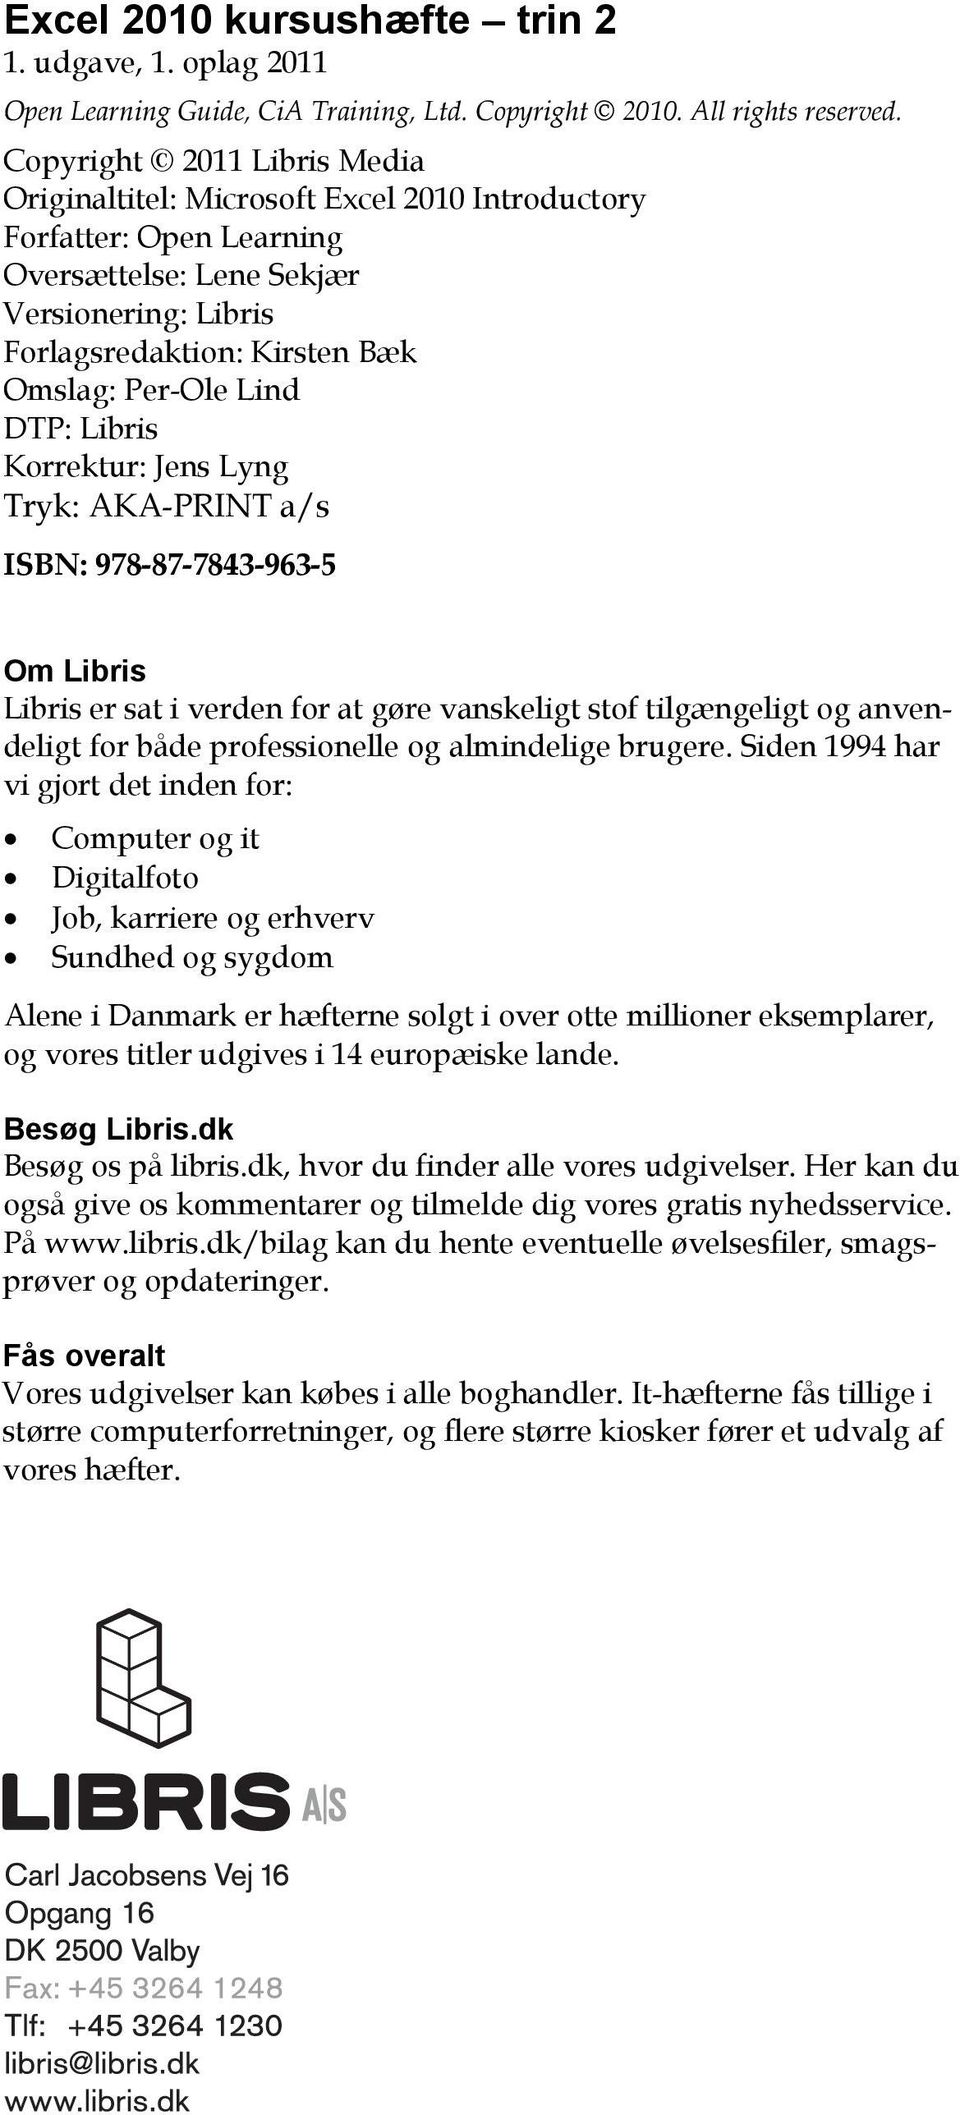 DTP: Libris Korrektur: Jens Lyng Tryk: AKA-PRINT a/s ISBN: 978-87-7843-963-5 Om Libris Libris er sat i verden for at gøre vanskeligt stof tilgængeligt og anvendeligt for både professionelle og